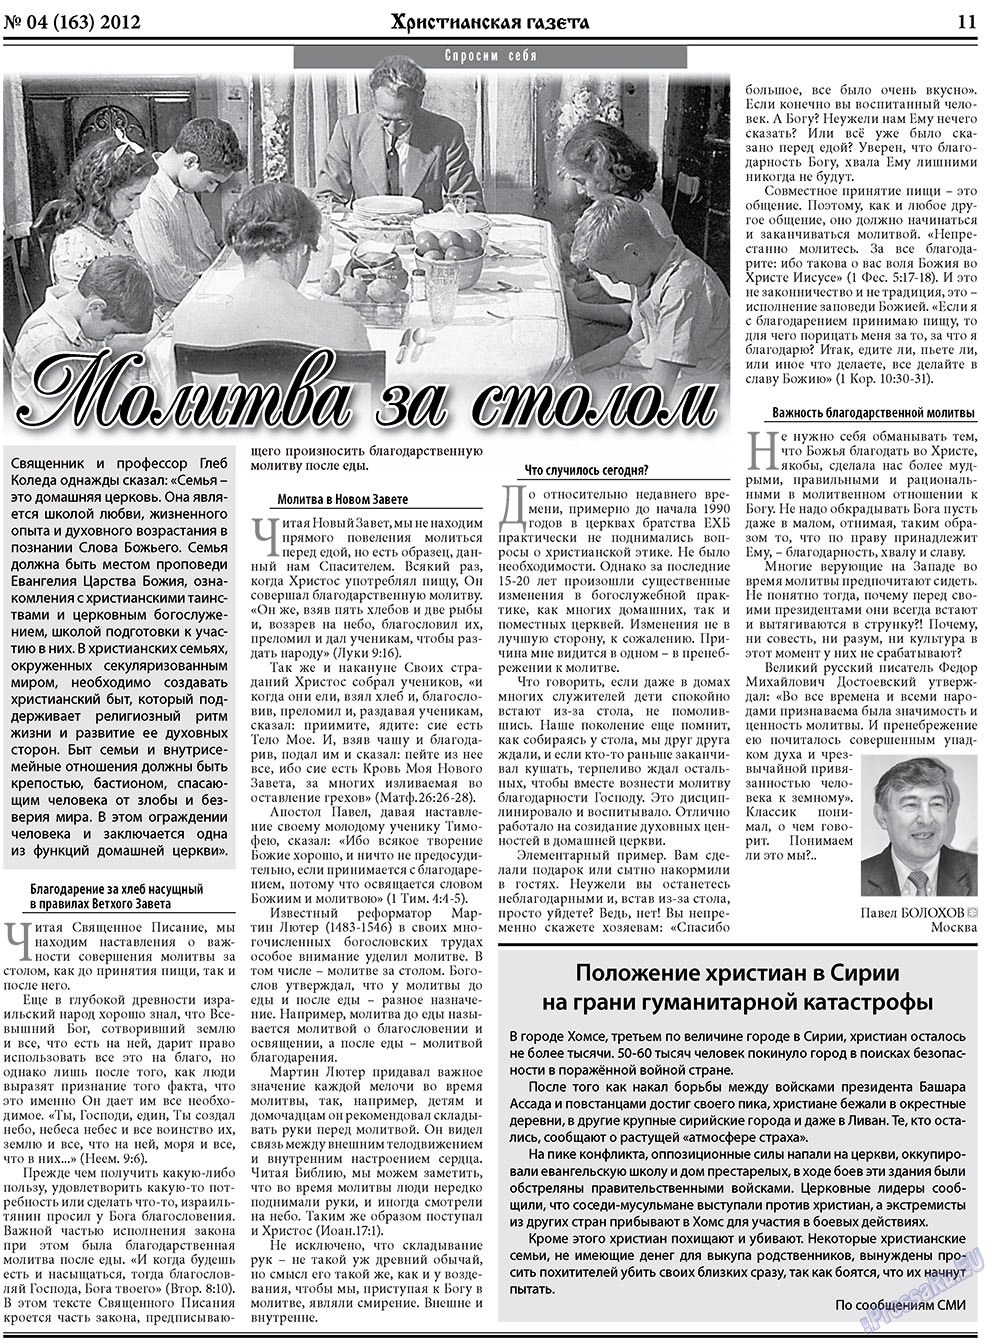 Христианская газета (газета). 2012 год, номер 4, стр. 11